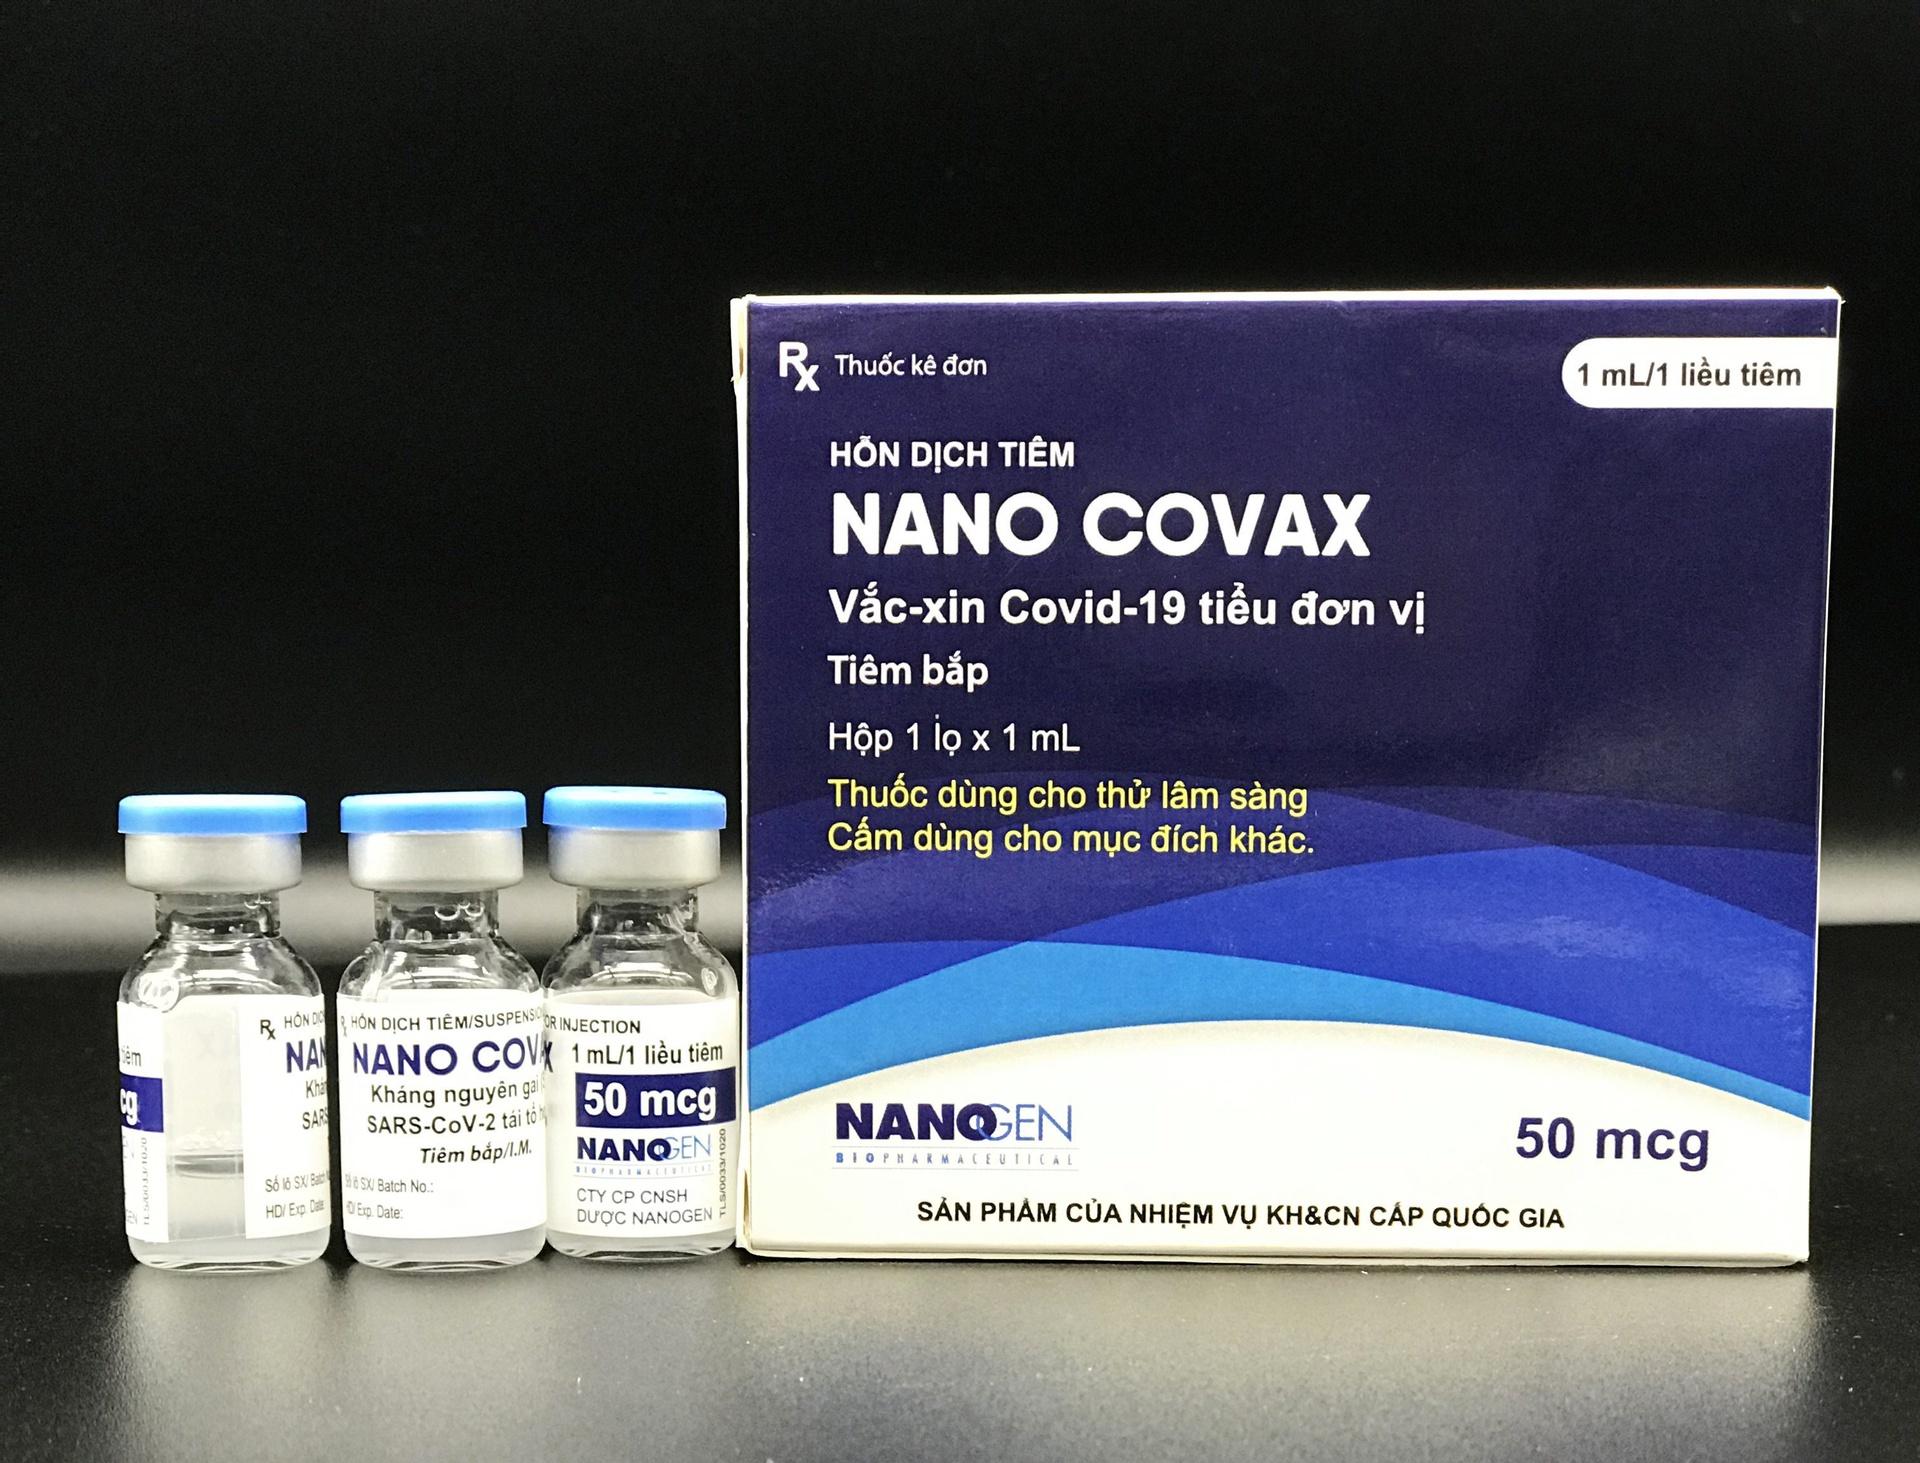 Vaccine Nano Covax sử dụng công nghệ protein tái tổ hợp, là vaccine ngừa Covid-19 đầu tiên của Việt Nam thử nghiệm lâm sàng. Ảnh: Nanogen.